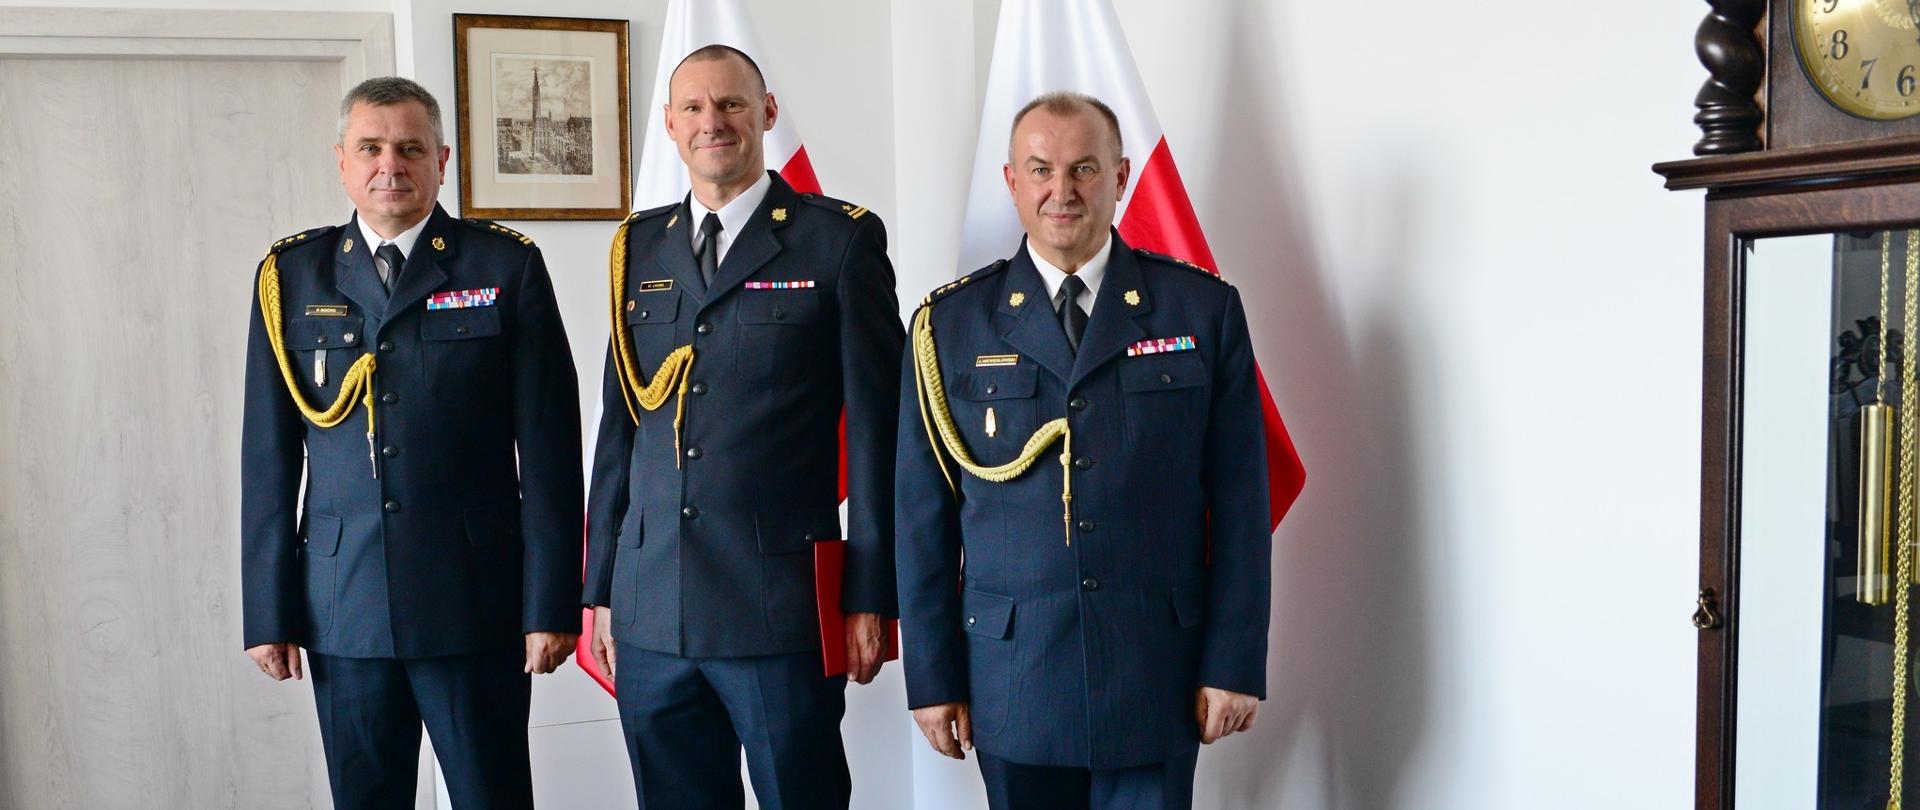 Pomorski komendant wojewódzki PSP, komendant powiatowy PSP w Wejherowie oraz powołany funkcjonariusz PSP stoją wspólnie po wręczeniu aktu powołania.